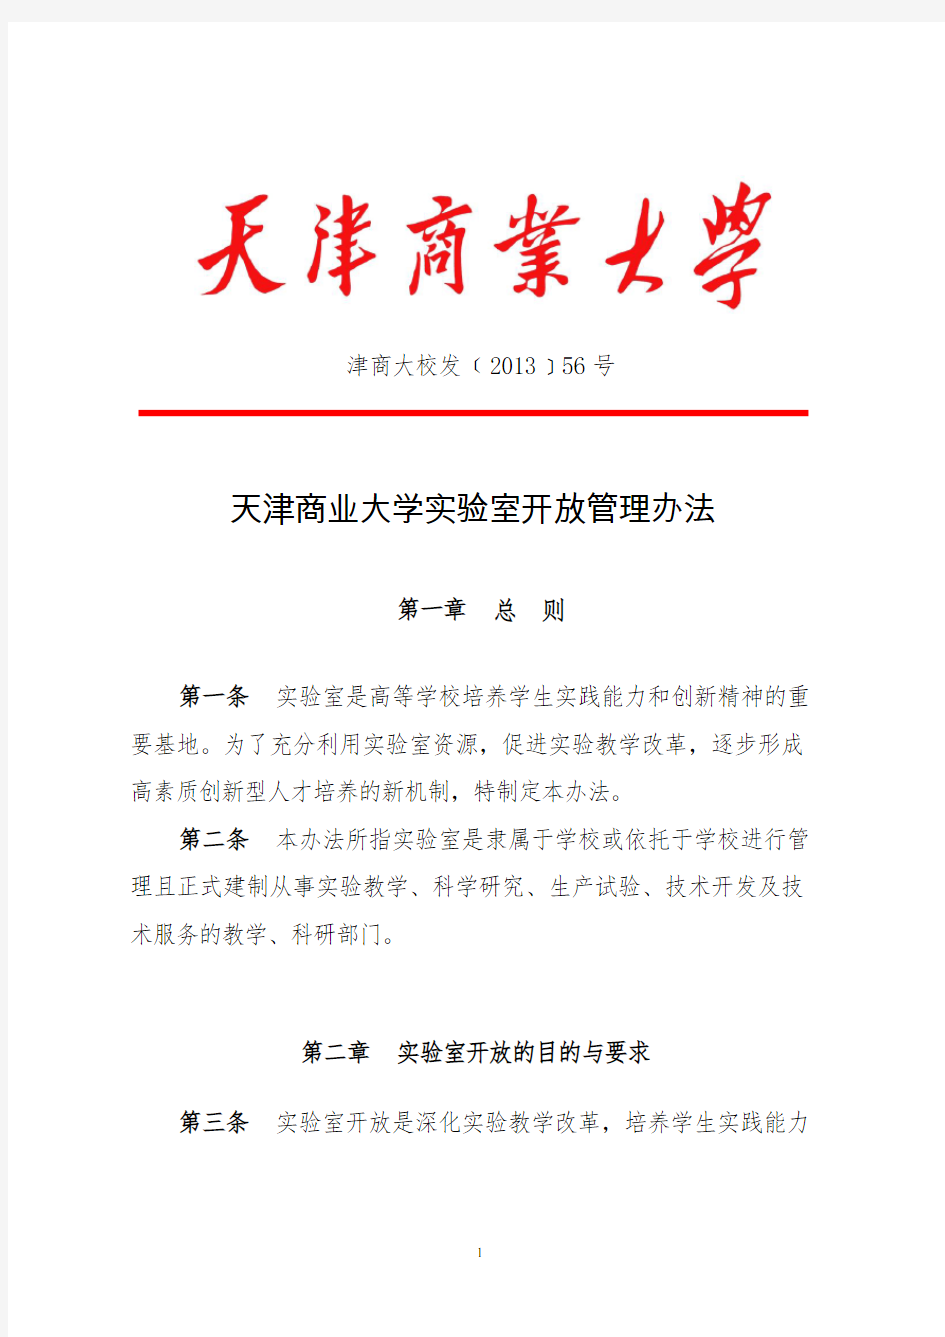 天津商业大学实验室开放管理办法